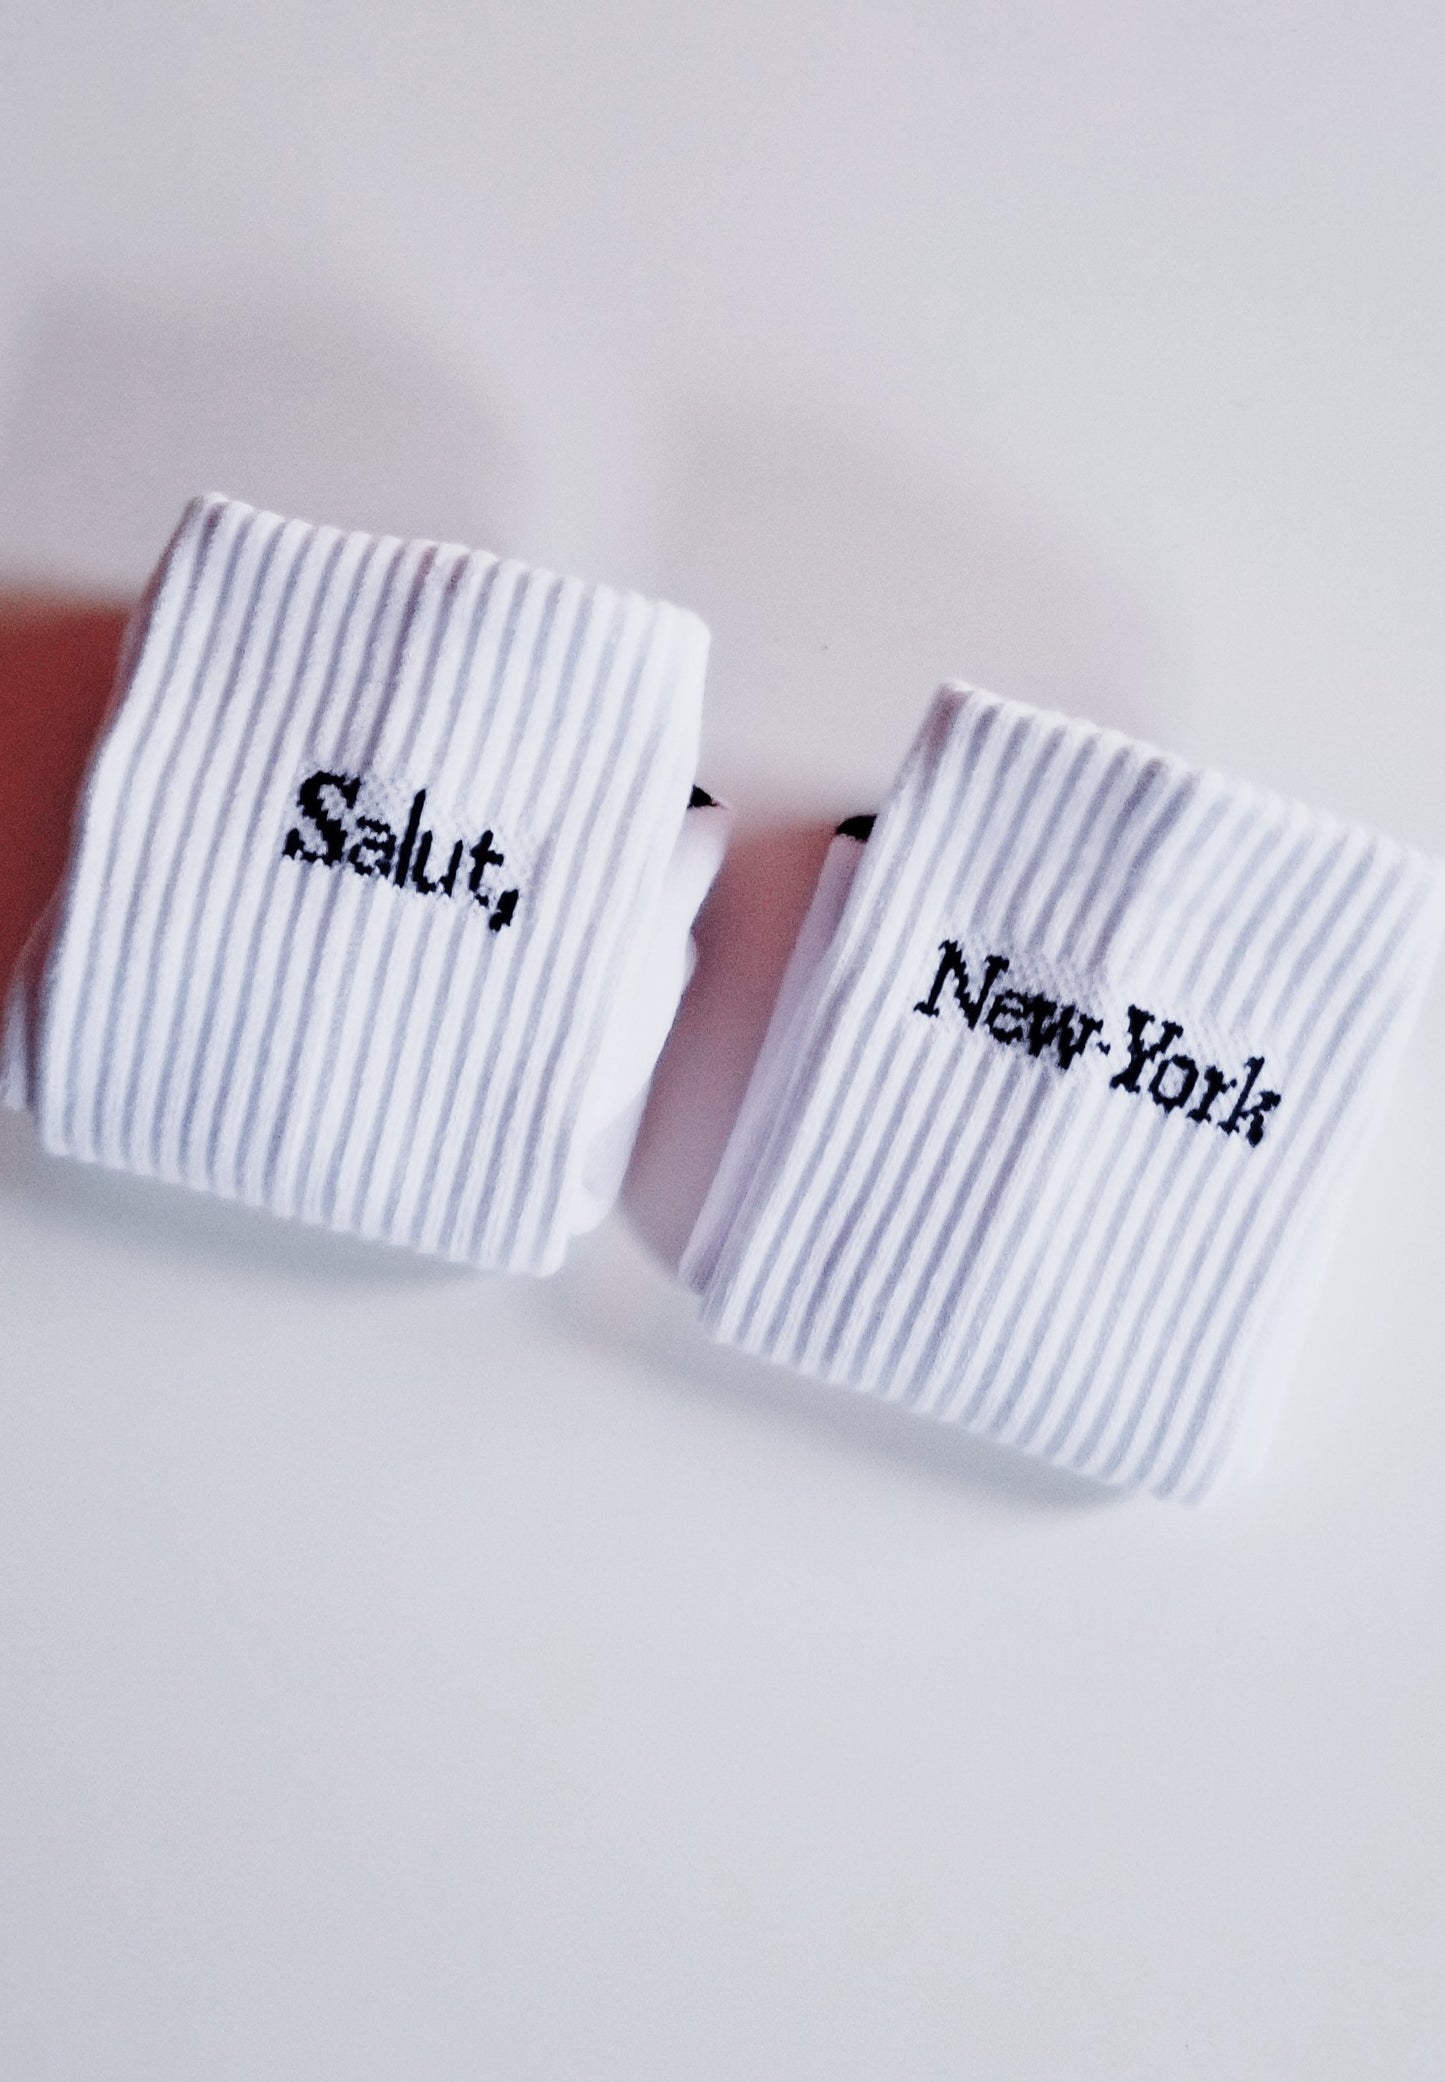 Socks Salut New York wom(men)